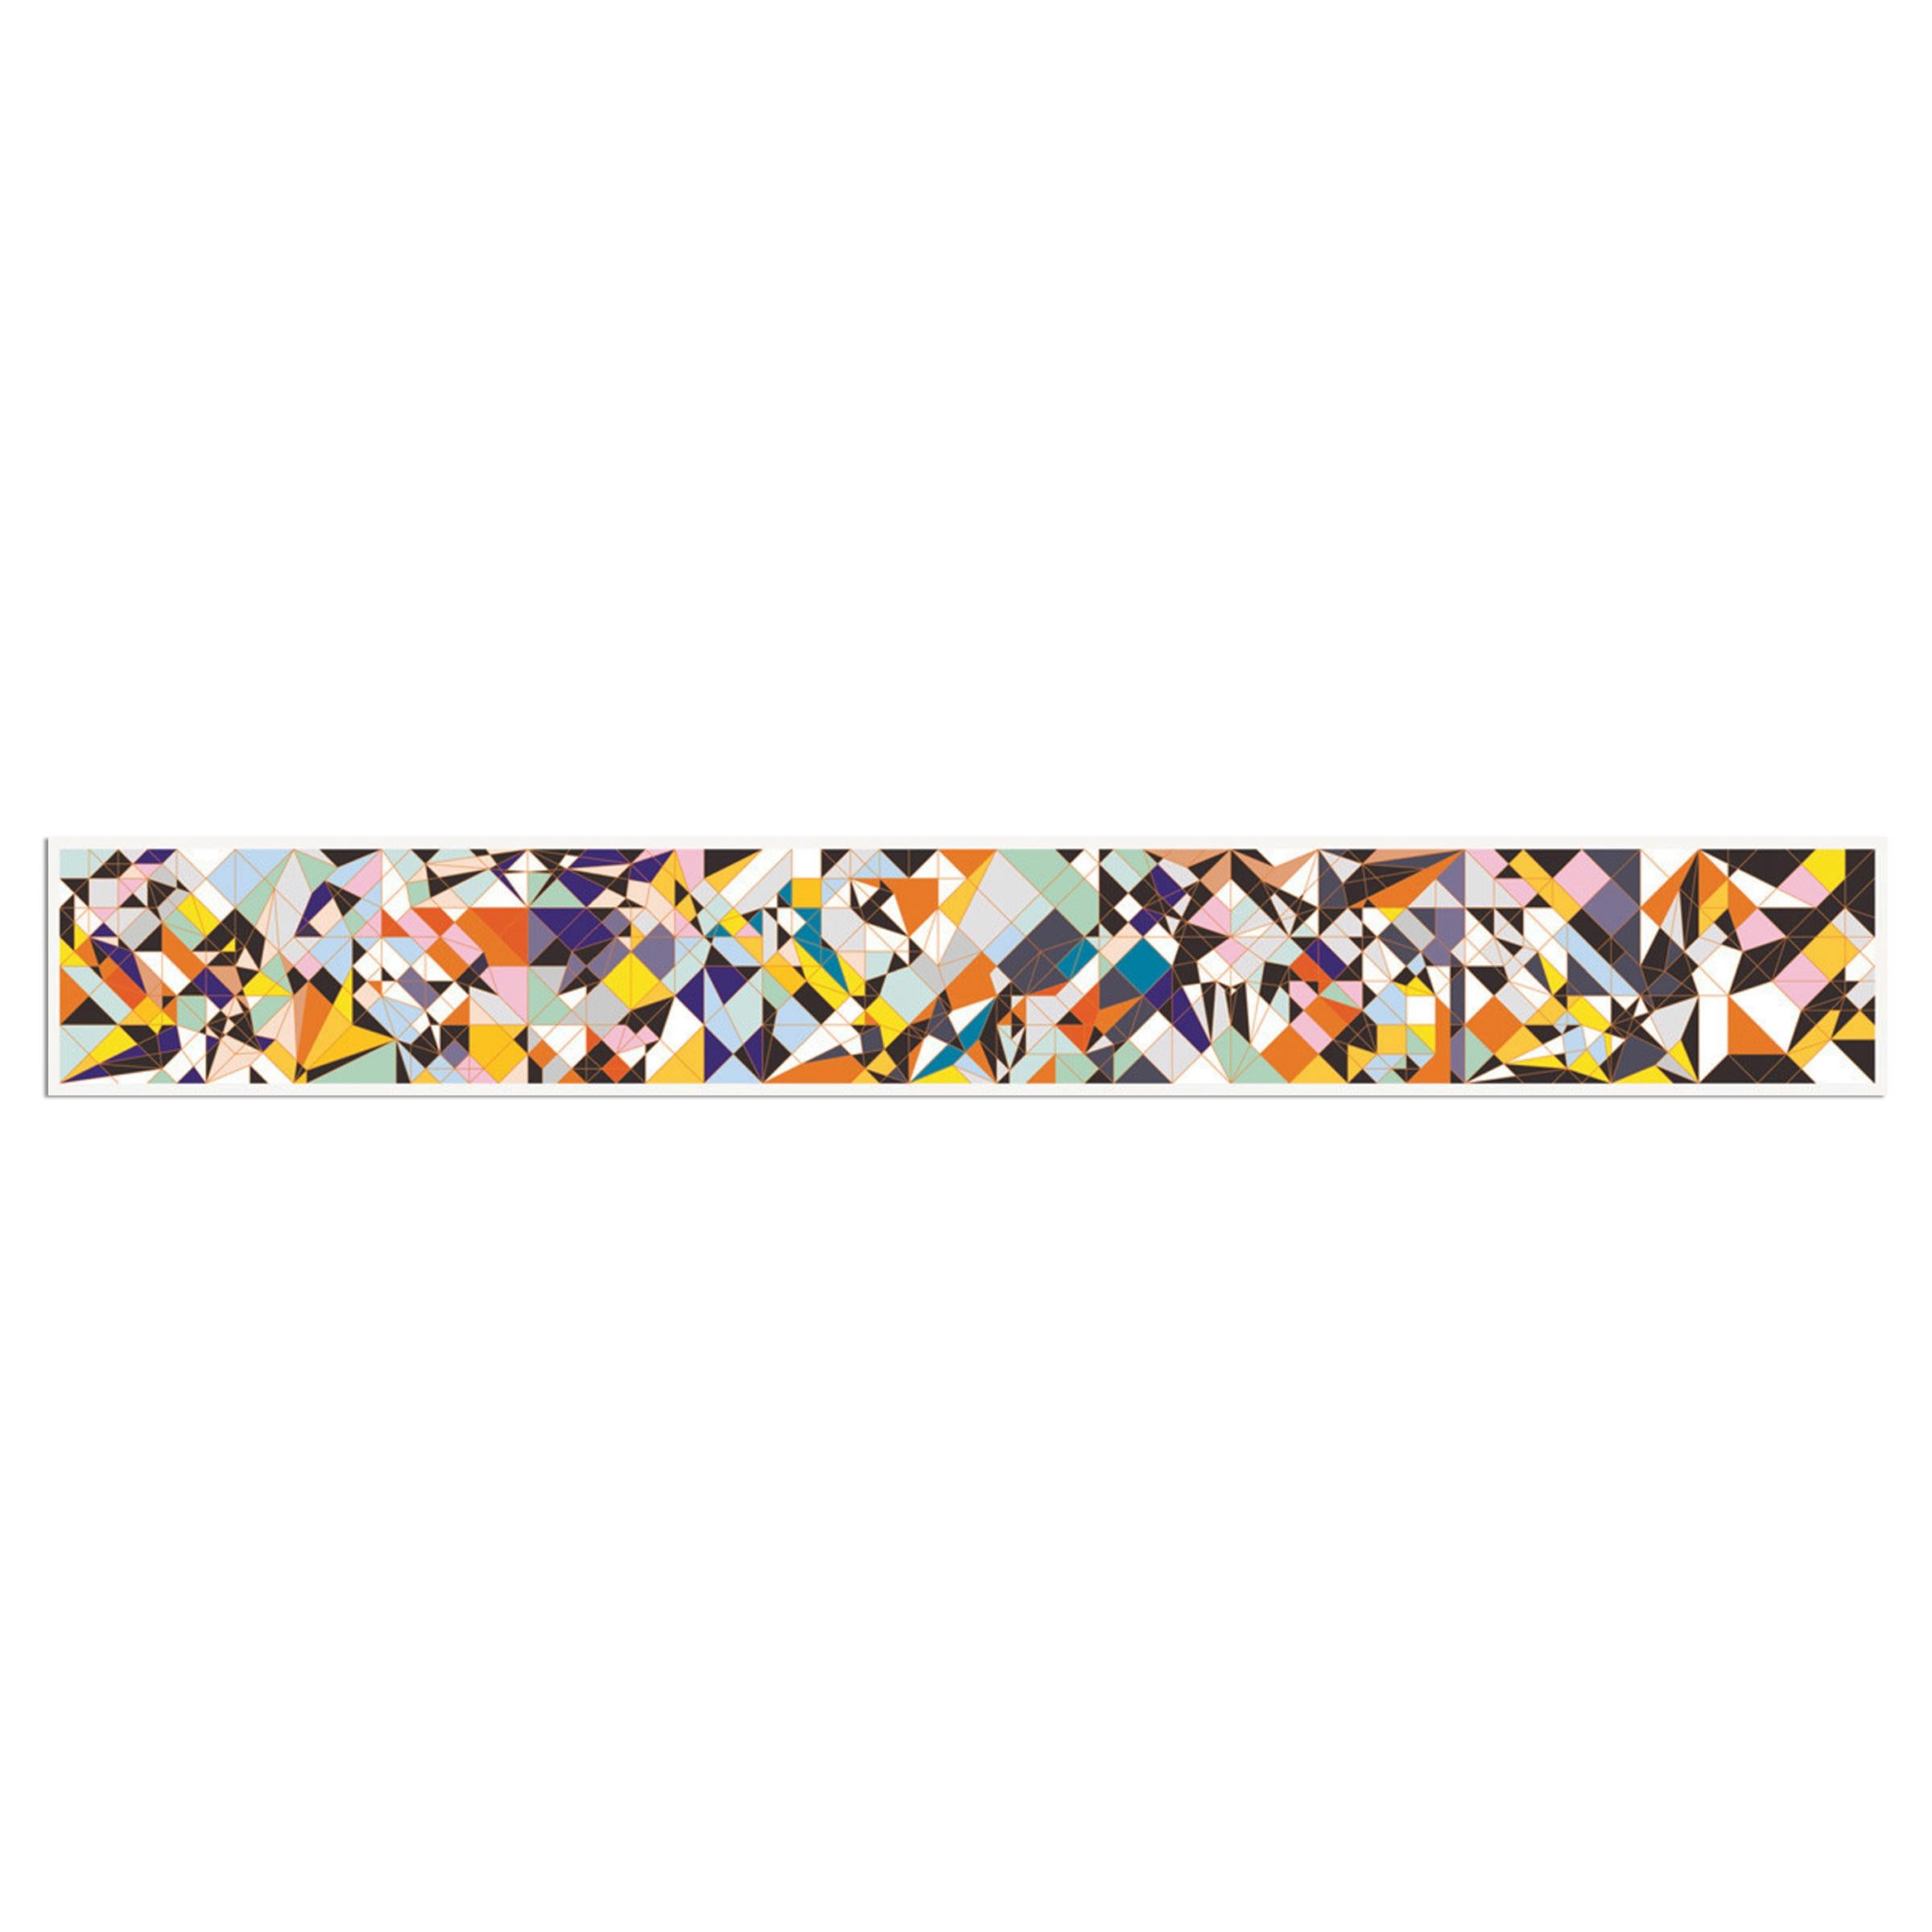 Sarah Morris (Amerikanerin, geboren 1967)
Taurus (Origami), 2009
Medium: 9-teiliges Leporello, digitaler Pigmentdruck auf Papier
Abmessungen: 32 x 225 cm (12½ x 88½ in)
Auflage von 75 Stück: handsigniert und nummeriert
Zustand: Neuwertig (gefaltet